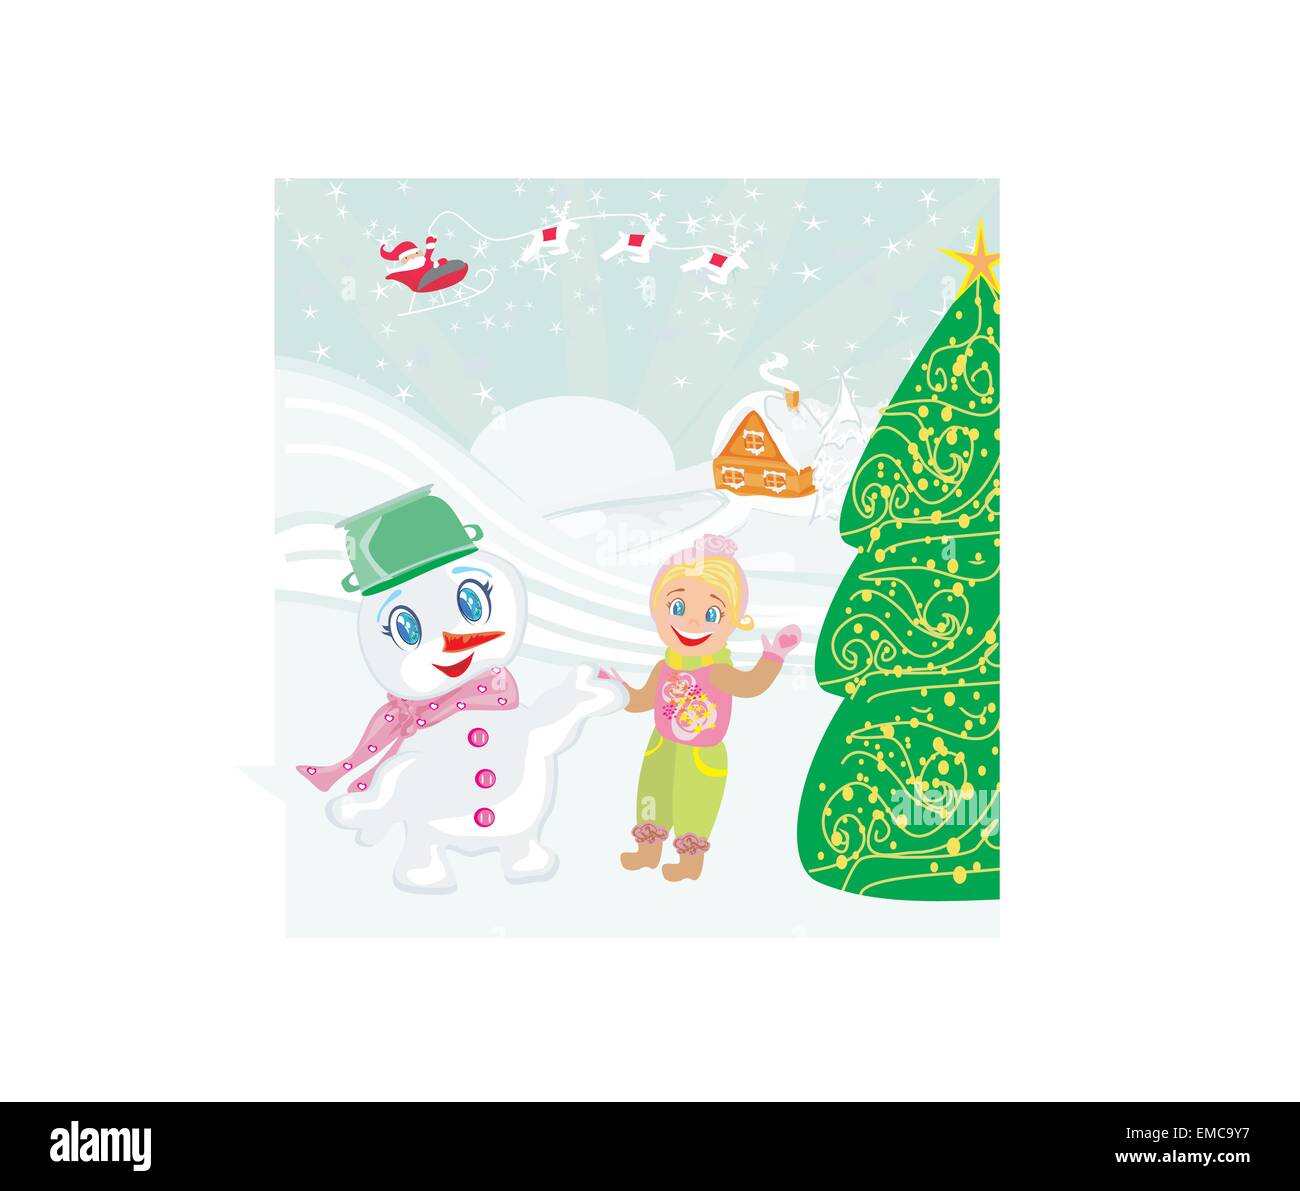 Weihnachtsmann, süßen Schneemann und lächelndes Mädchen Stock Vektor